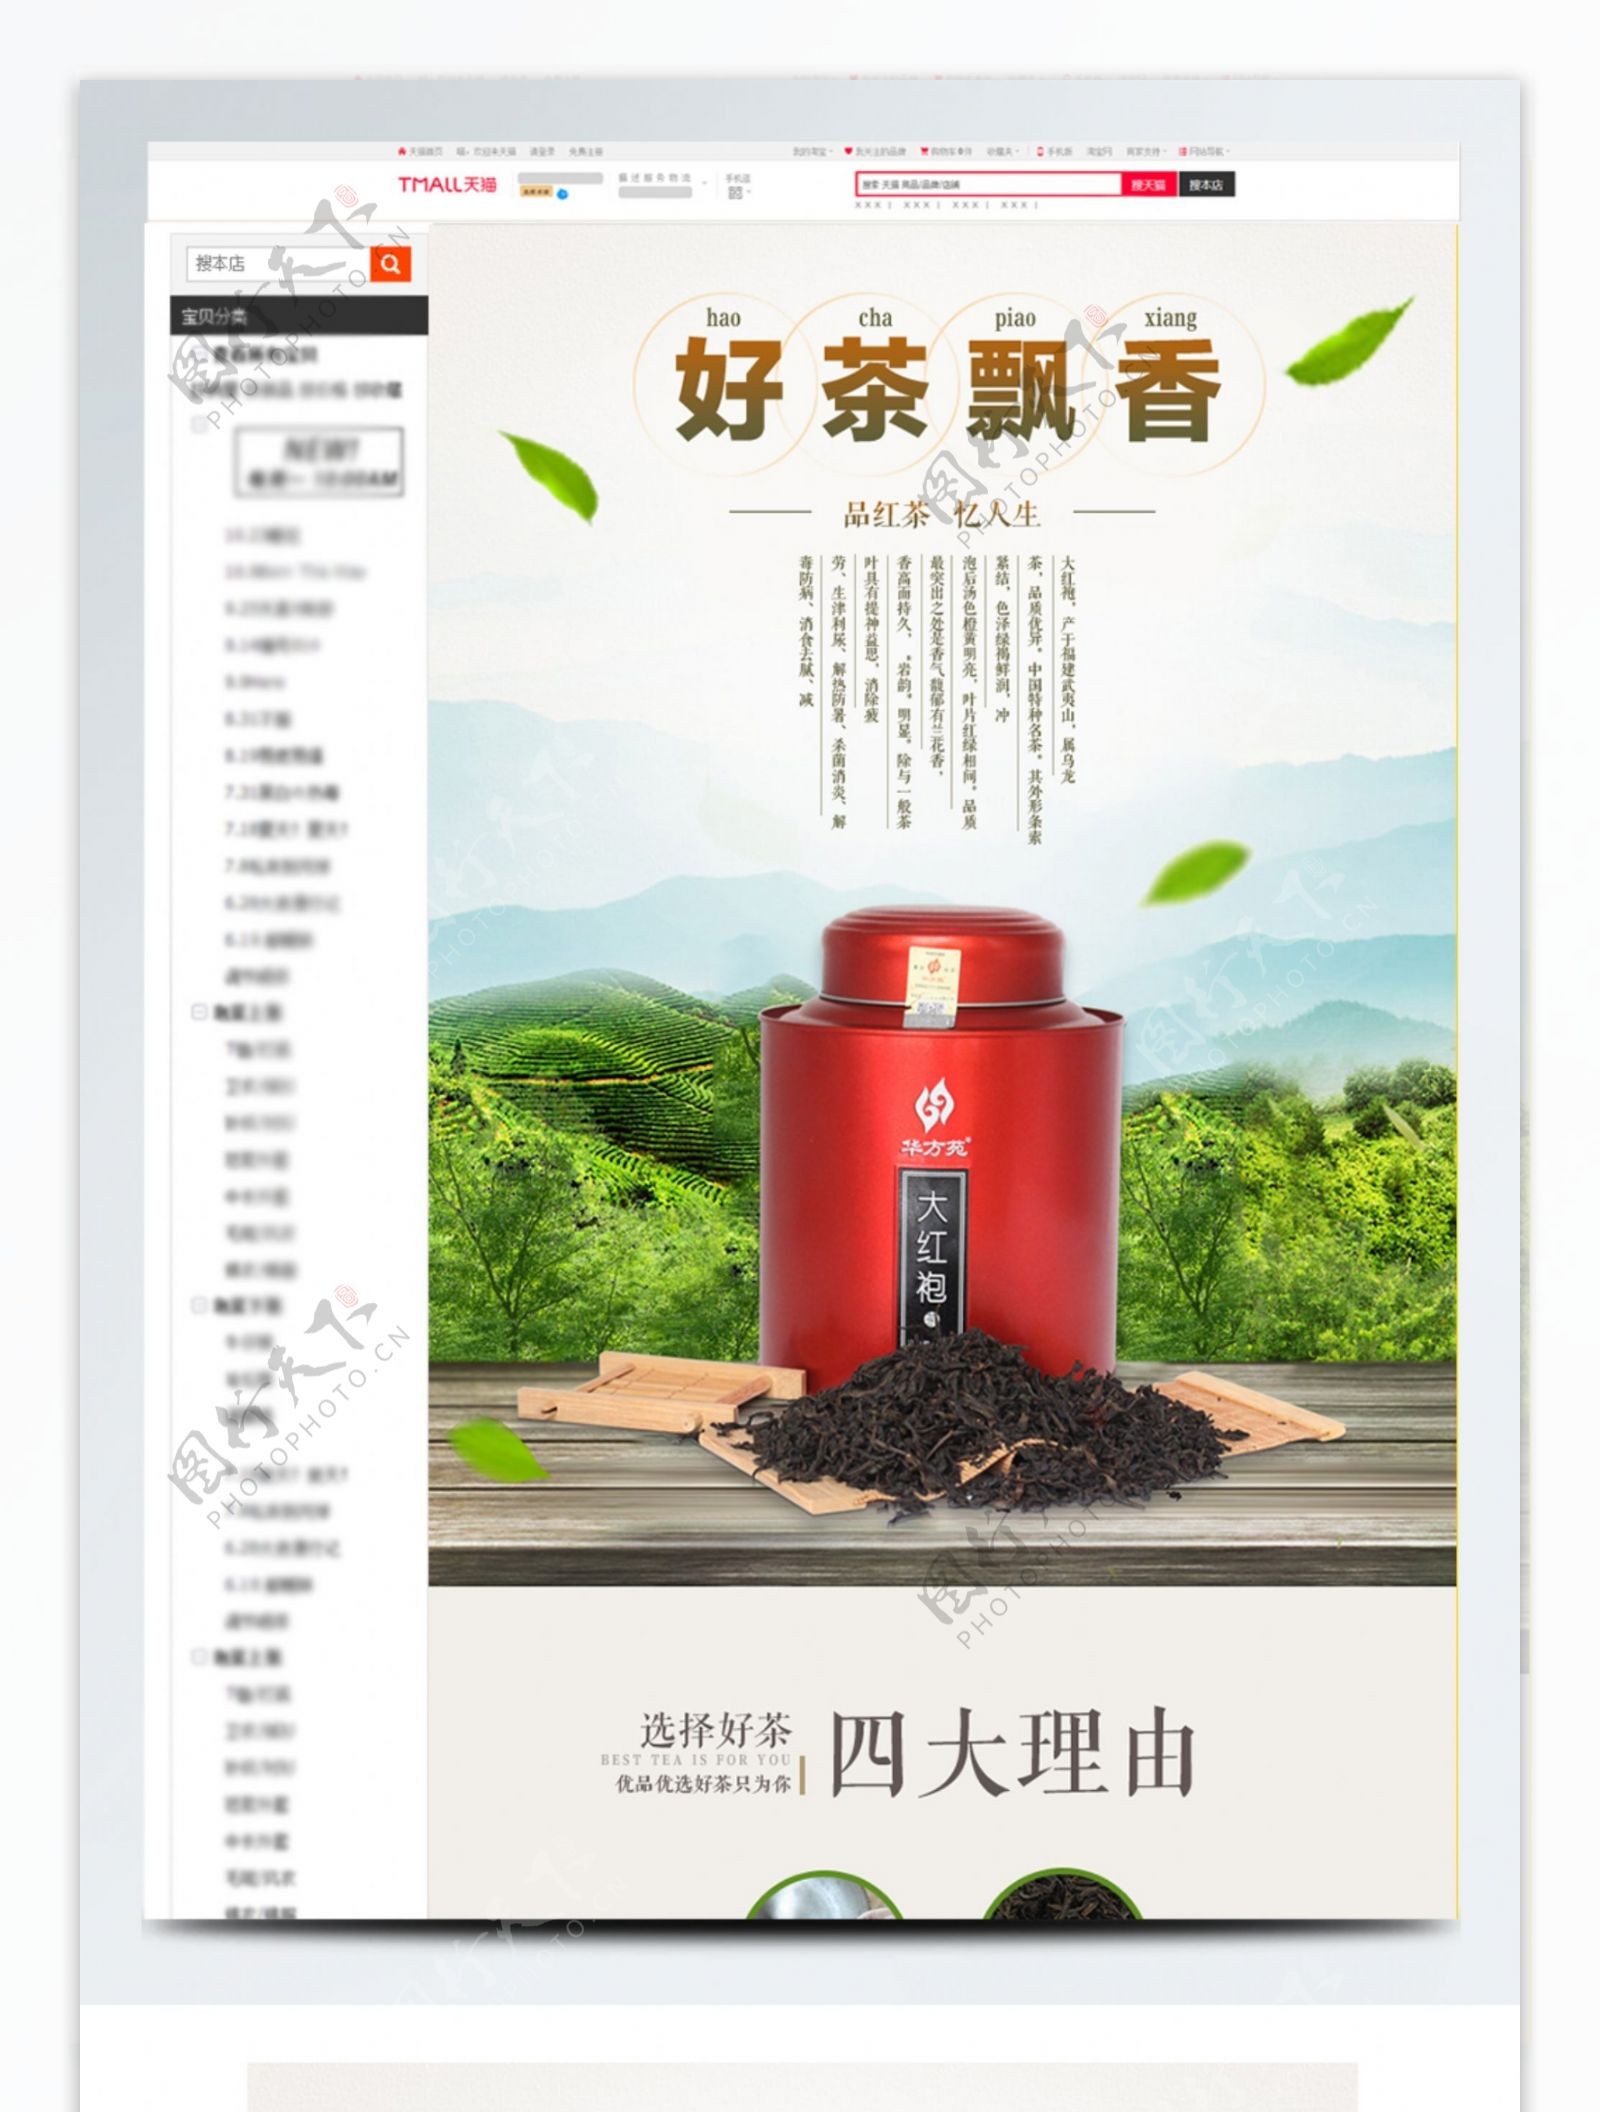 电商淘宝好茶飘香清新中国风棕绿色茶品详情